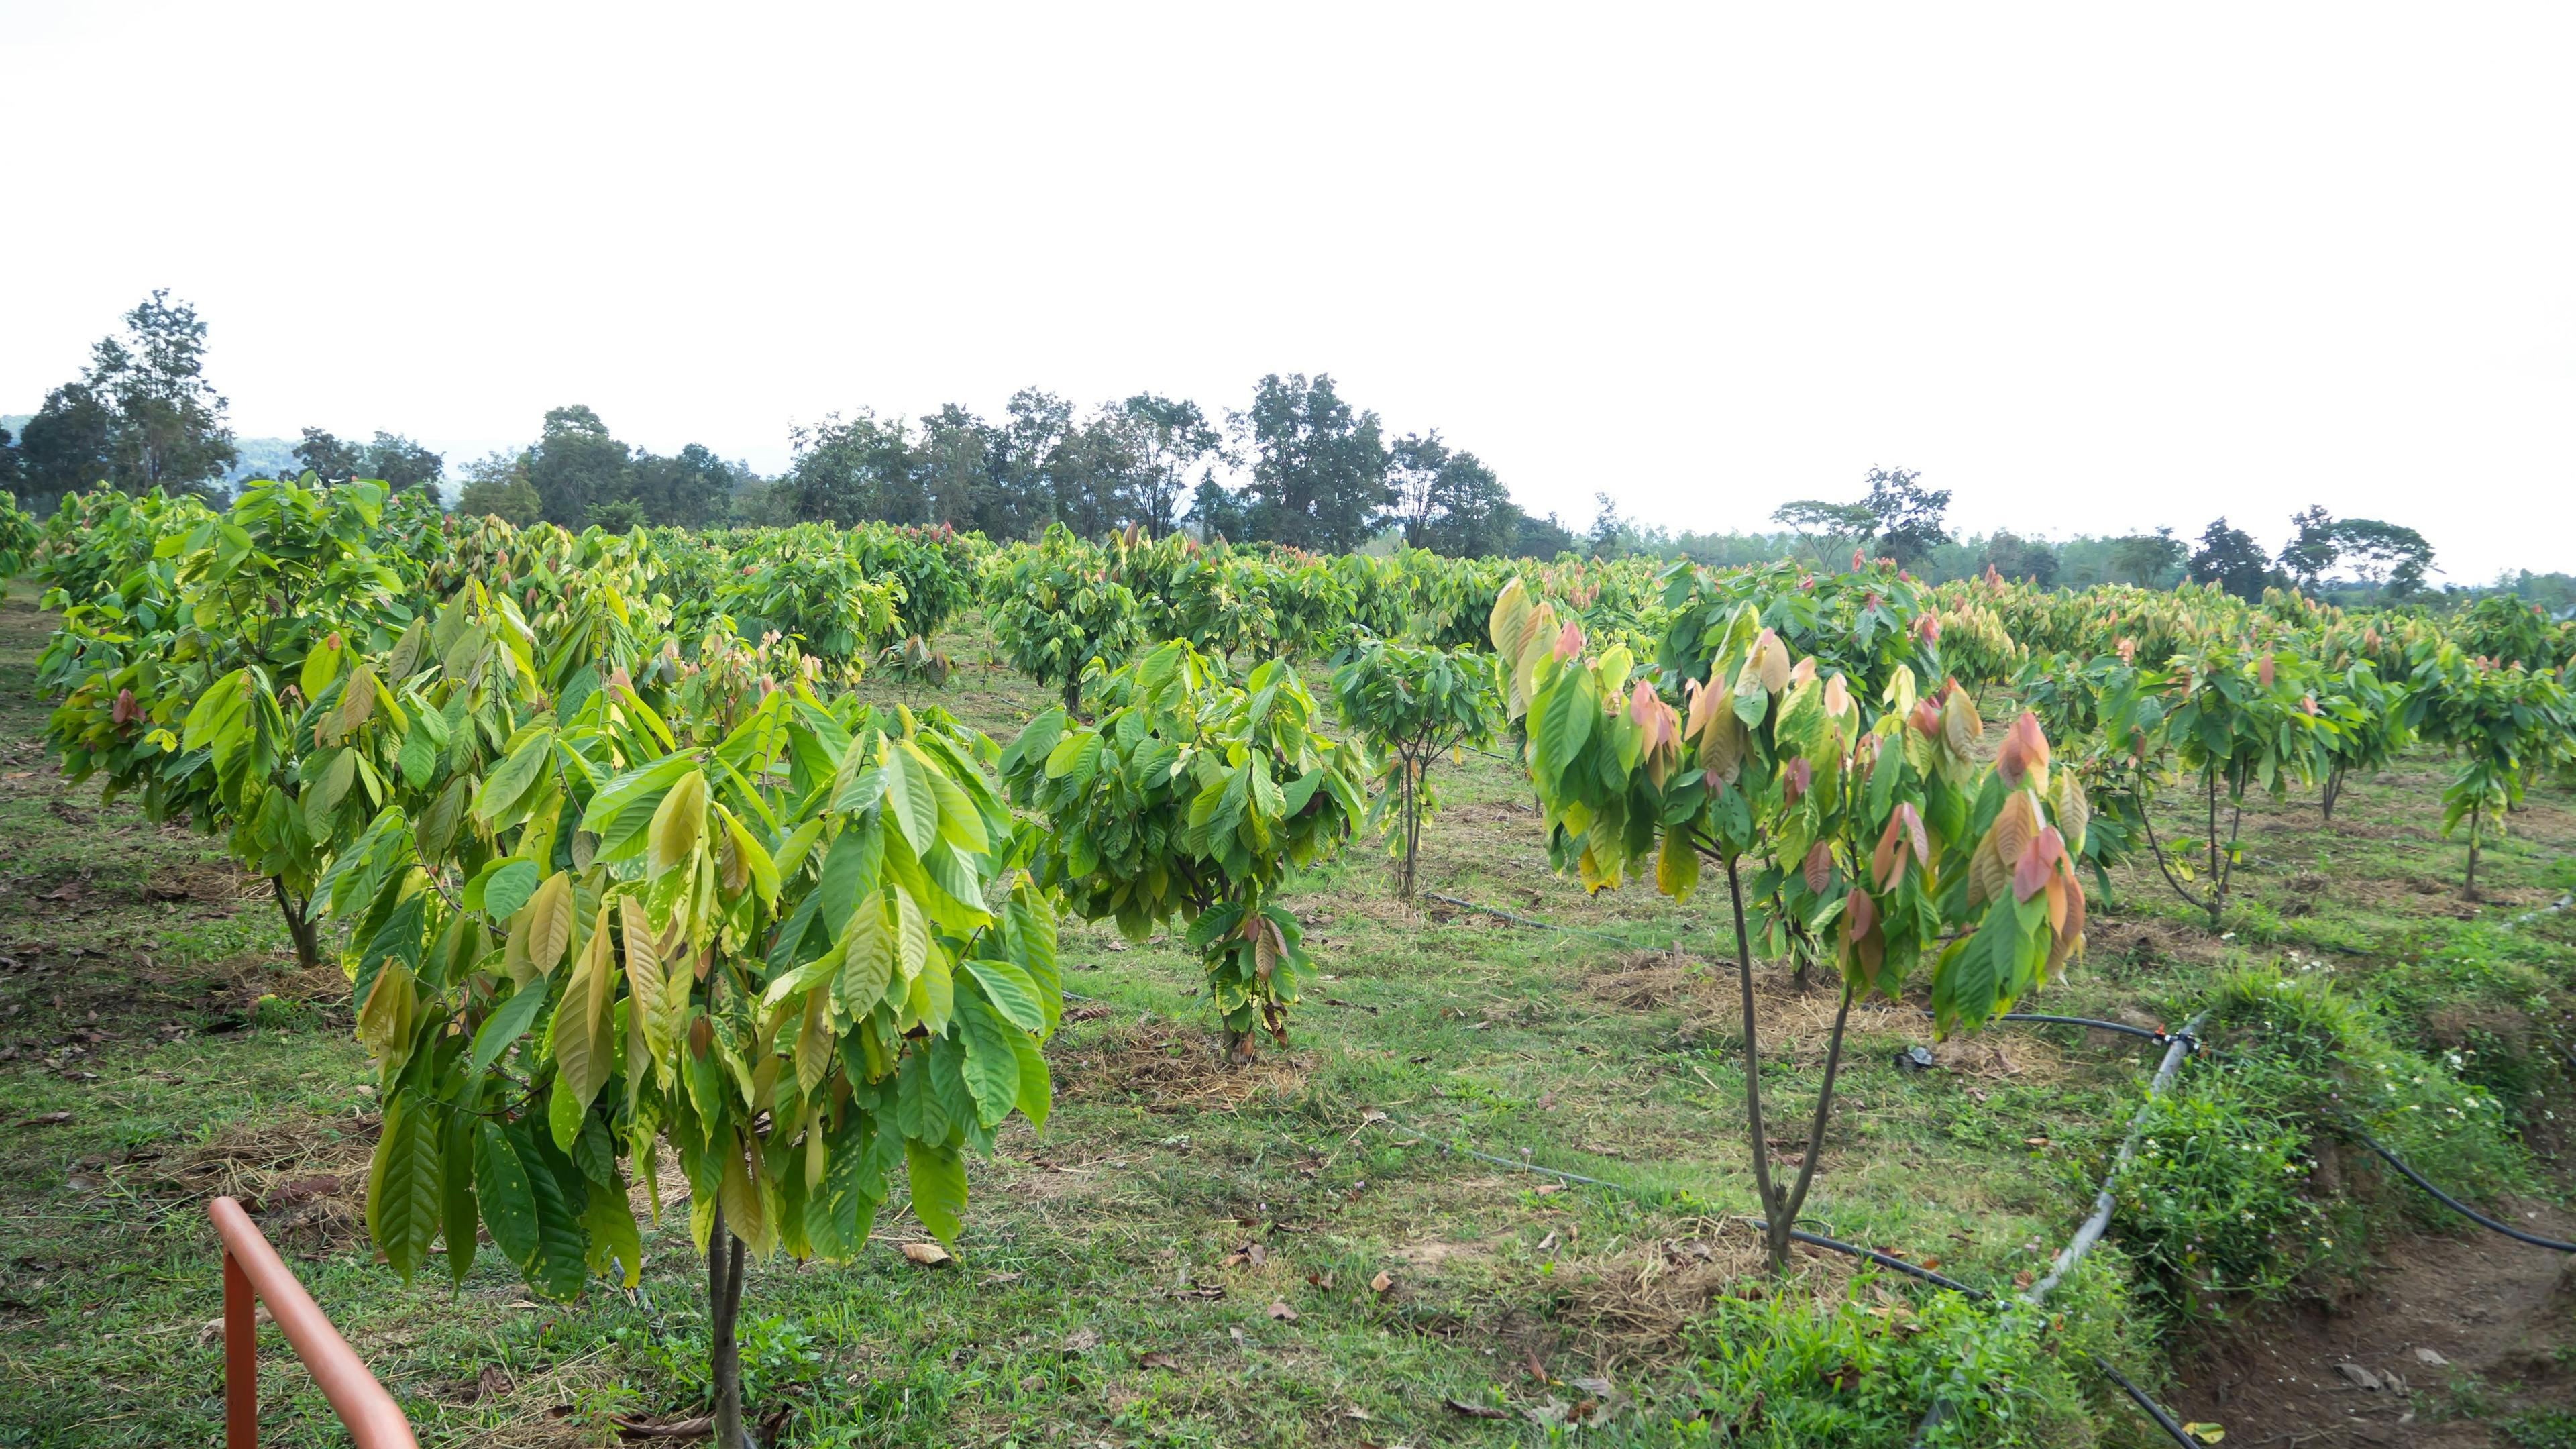 Alter Eco cacoa farm